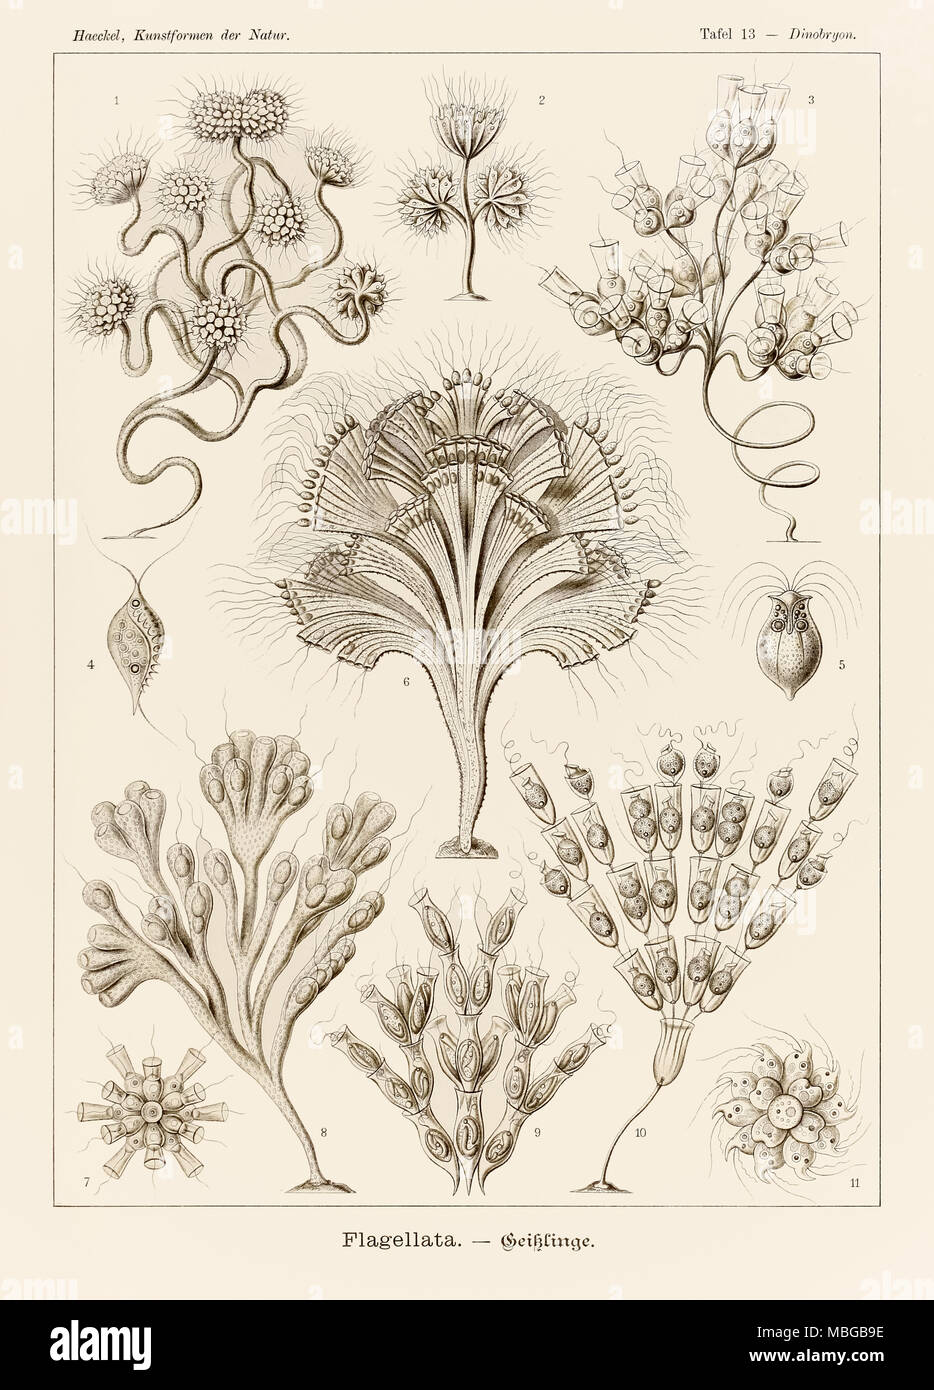 Lámina 13 Dinobryon Flagellata desde "Kunstformen der Natur" (formas artísticas en la naturaleza), ilustrado por Ernst Haeckel (1834-1919). Ver más información a continuación. Foto de stock